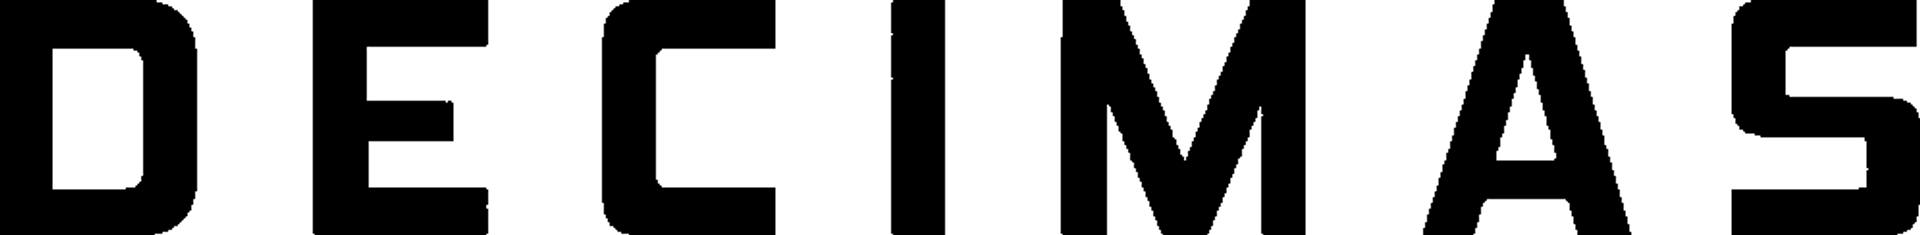 DÉCIMAS logo de catálogo